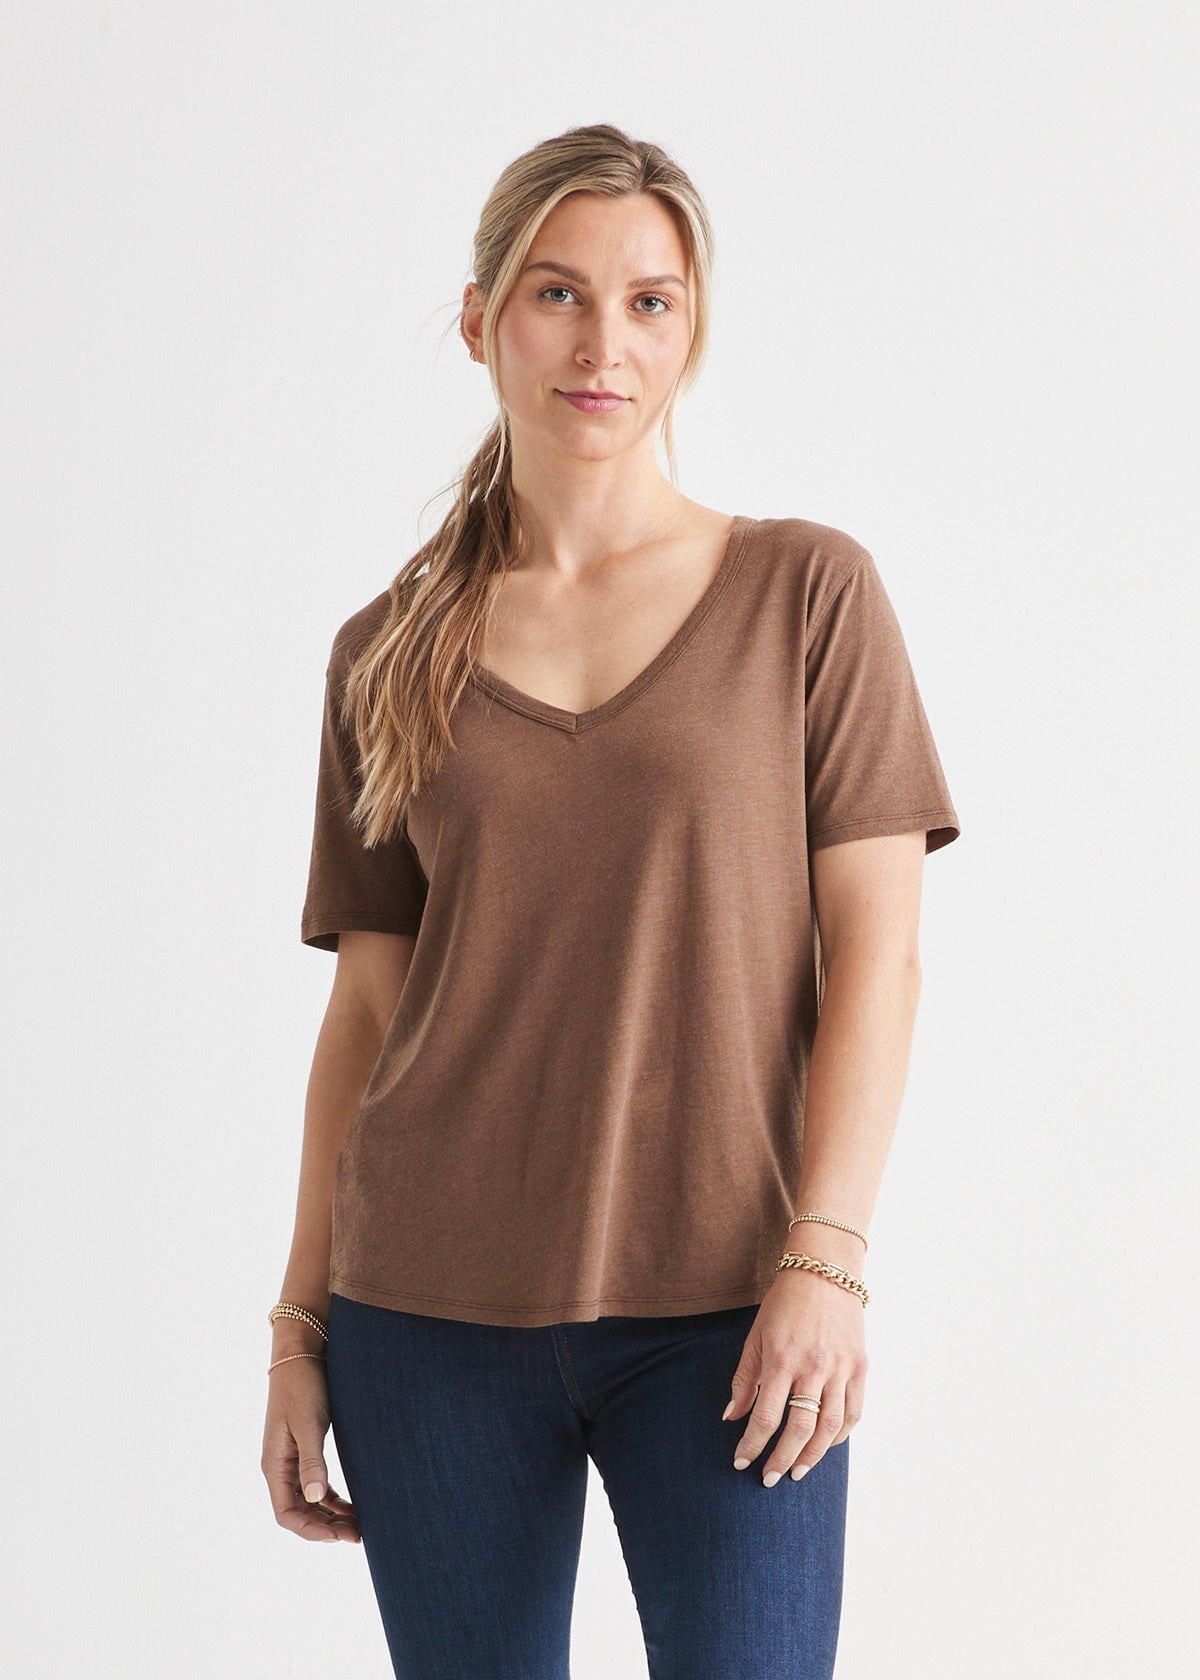 womens soft lightweight brown v-neck t-shirt front